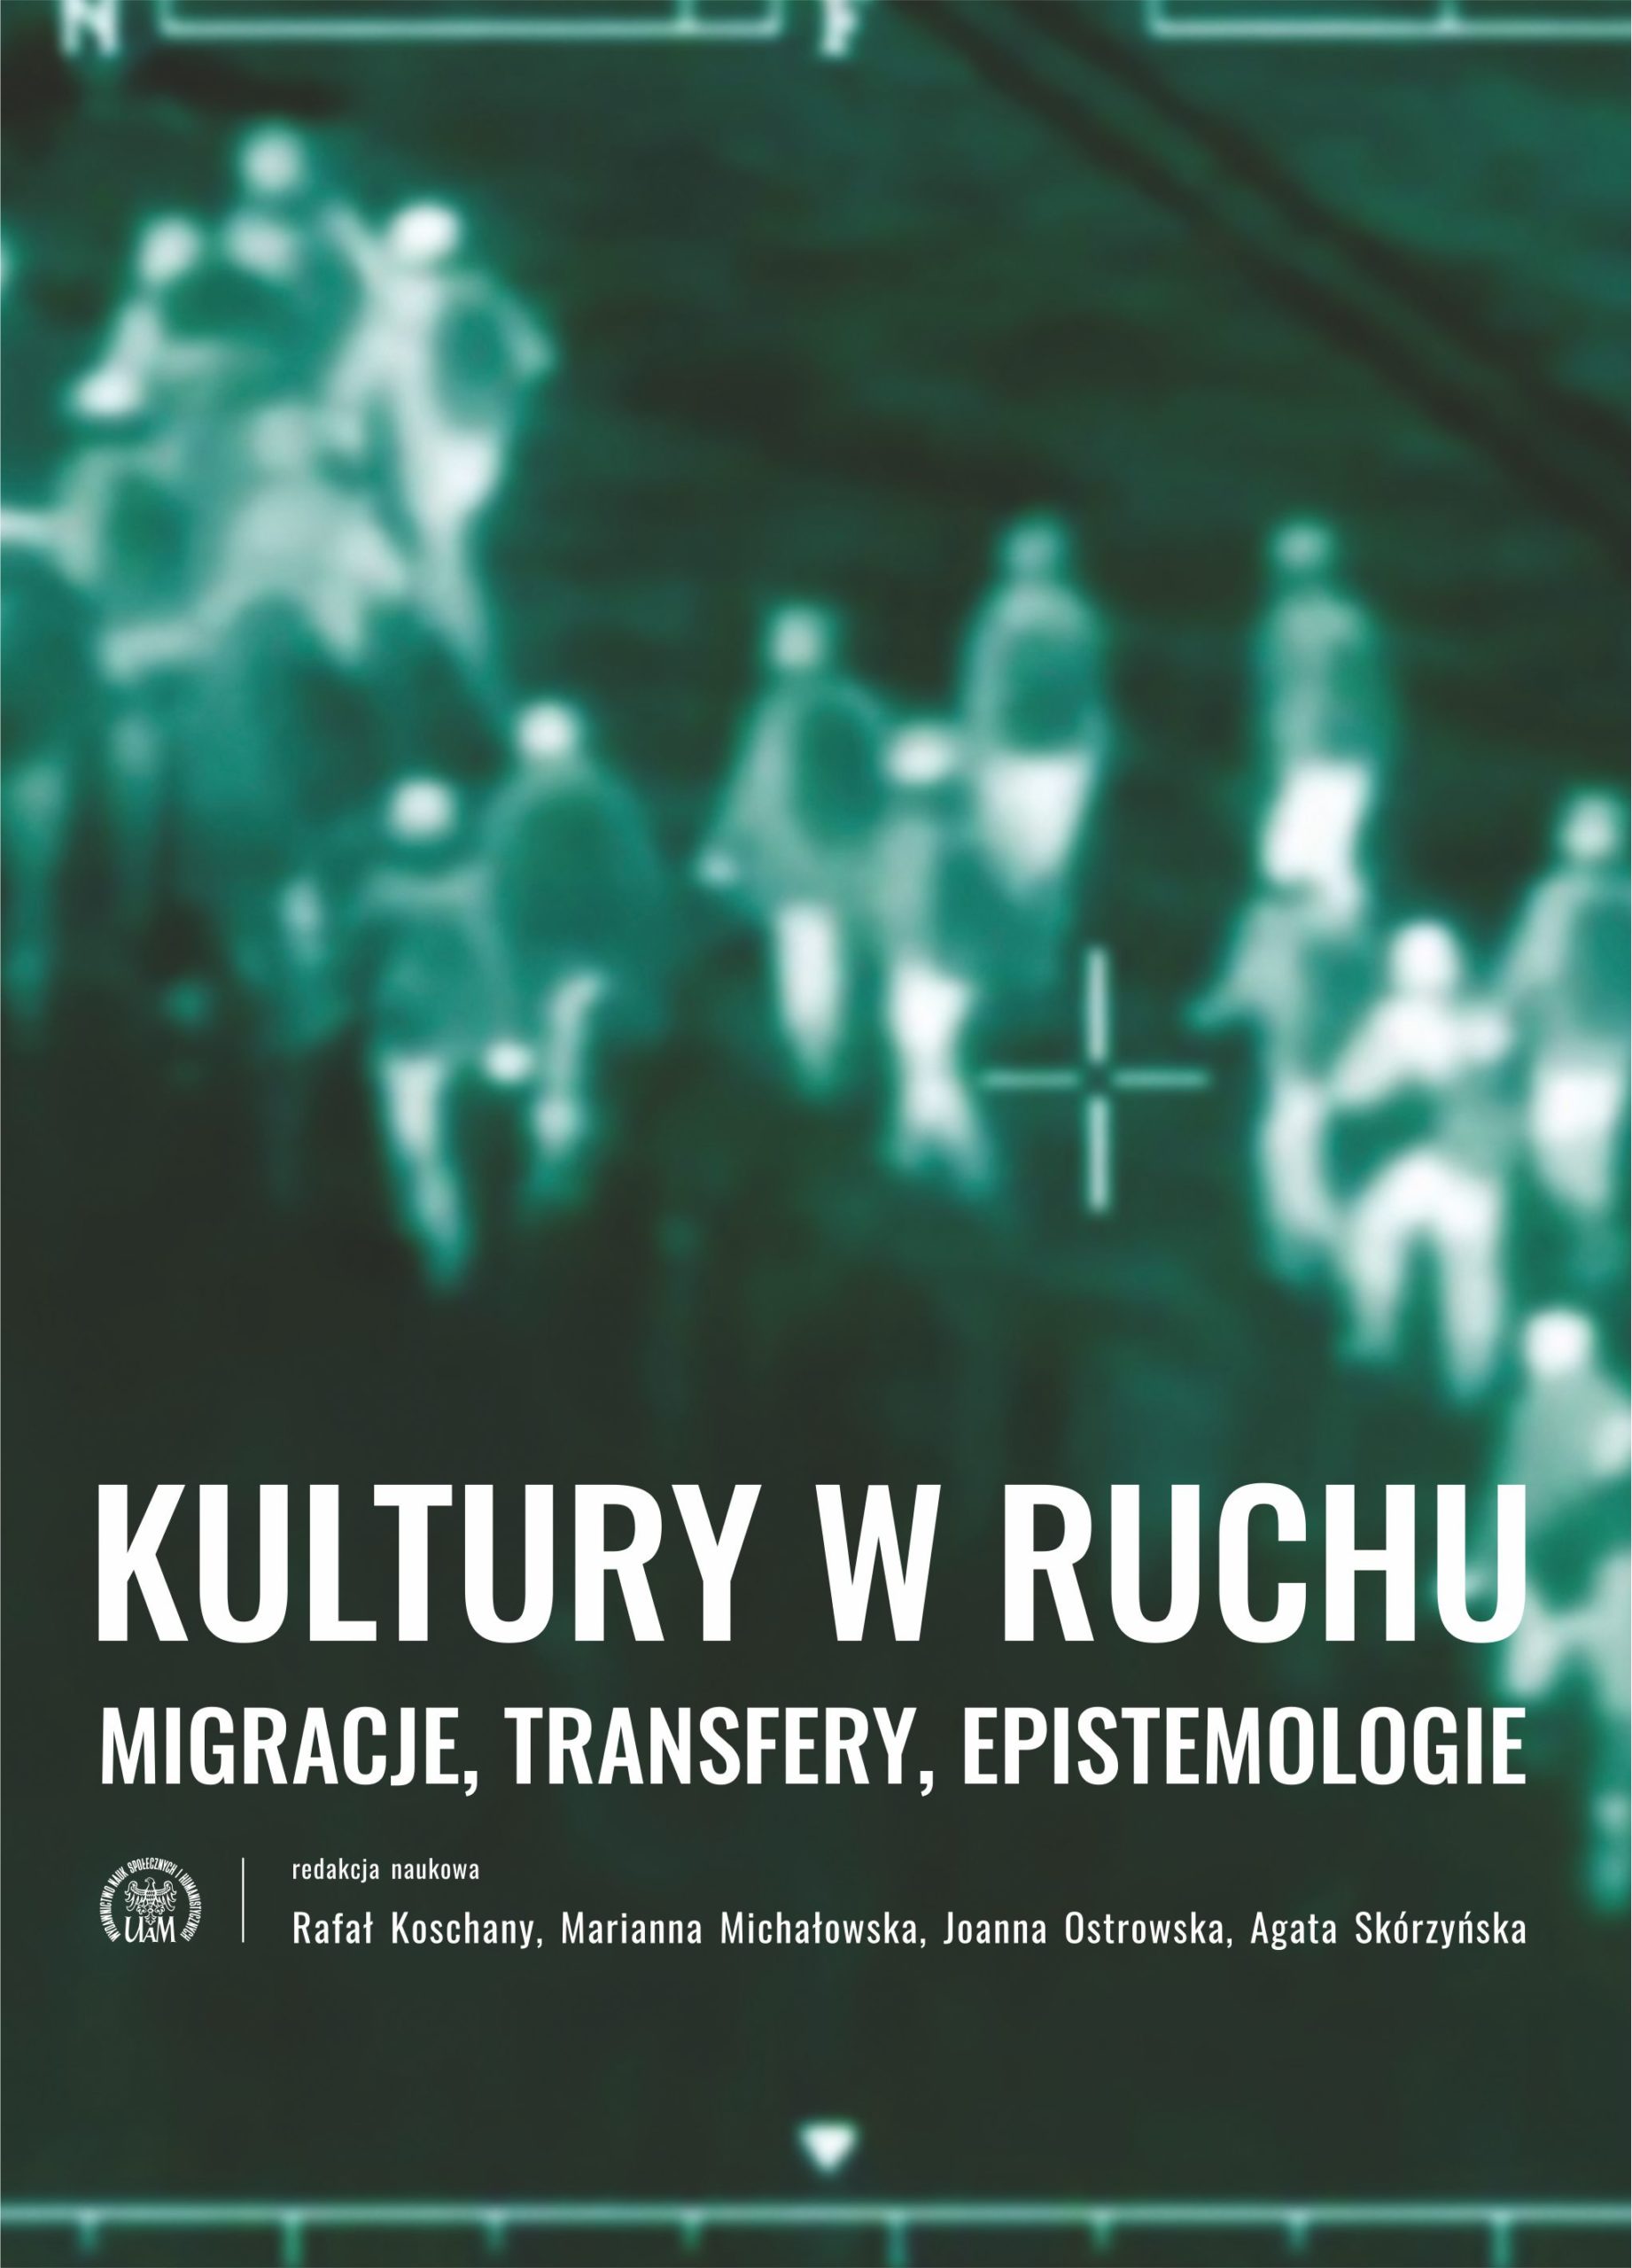 Kultury w ruchu. Migracje, transfery, epistemologie - Kulturoznawstwo UAM